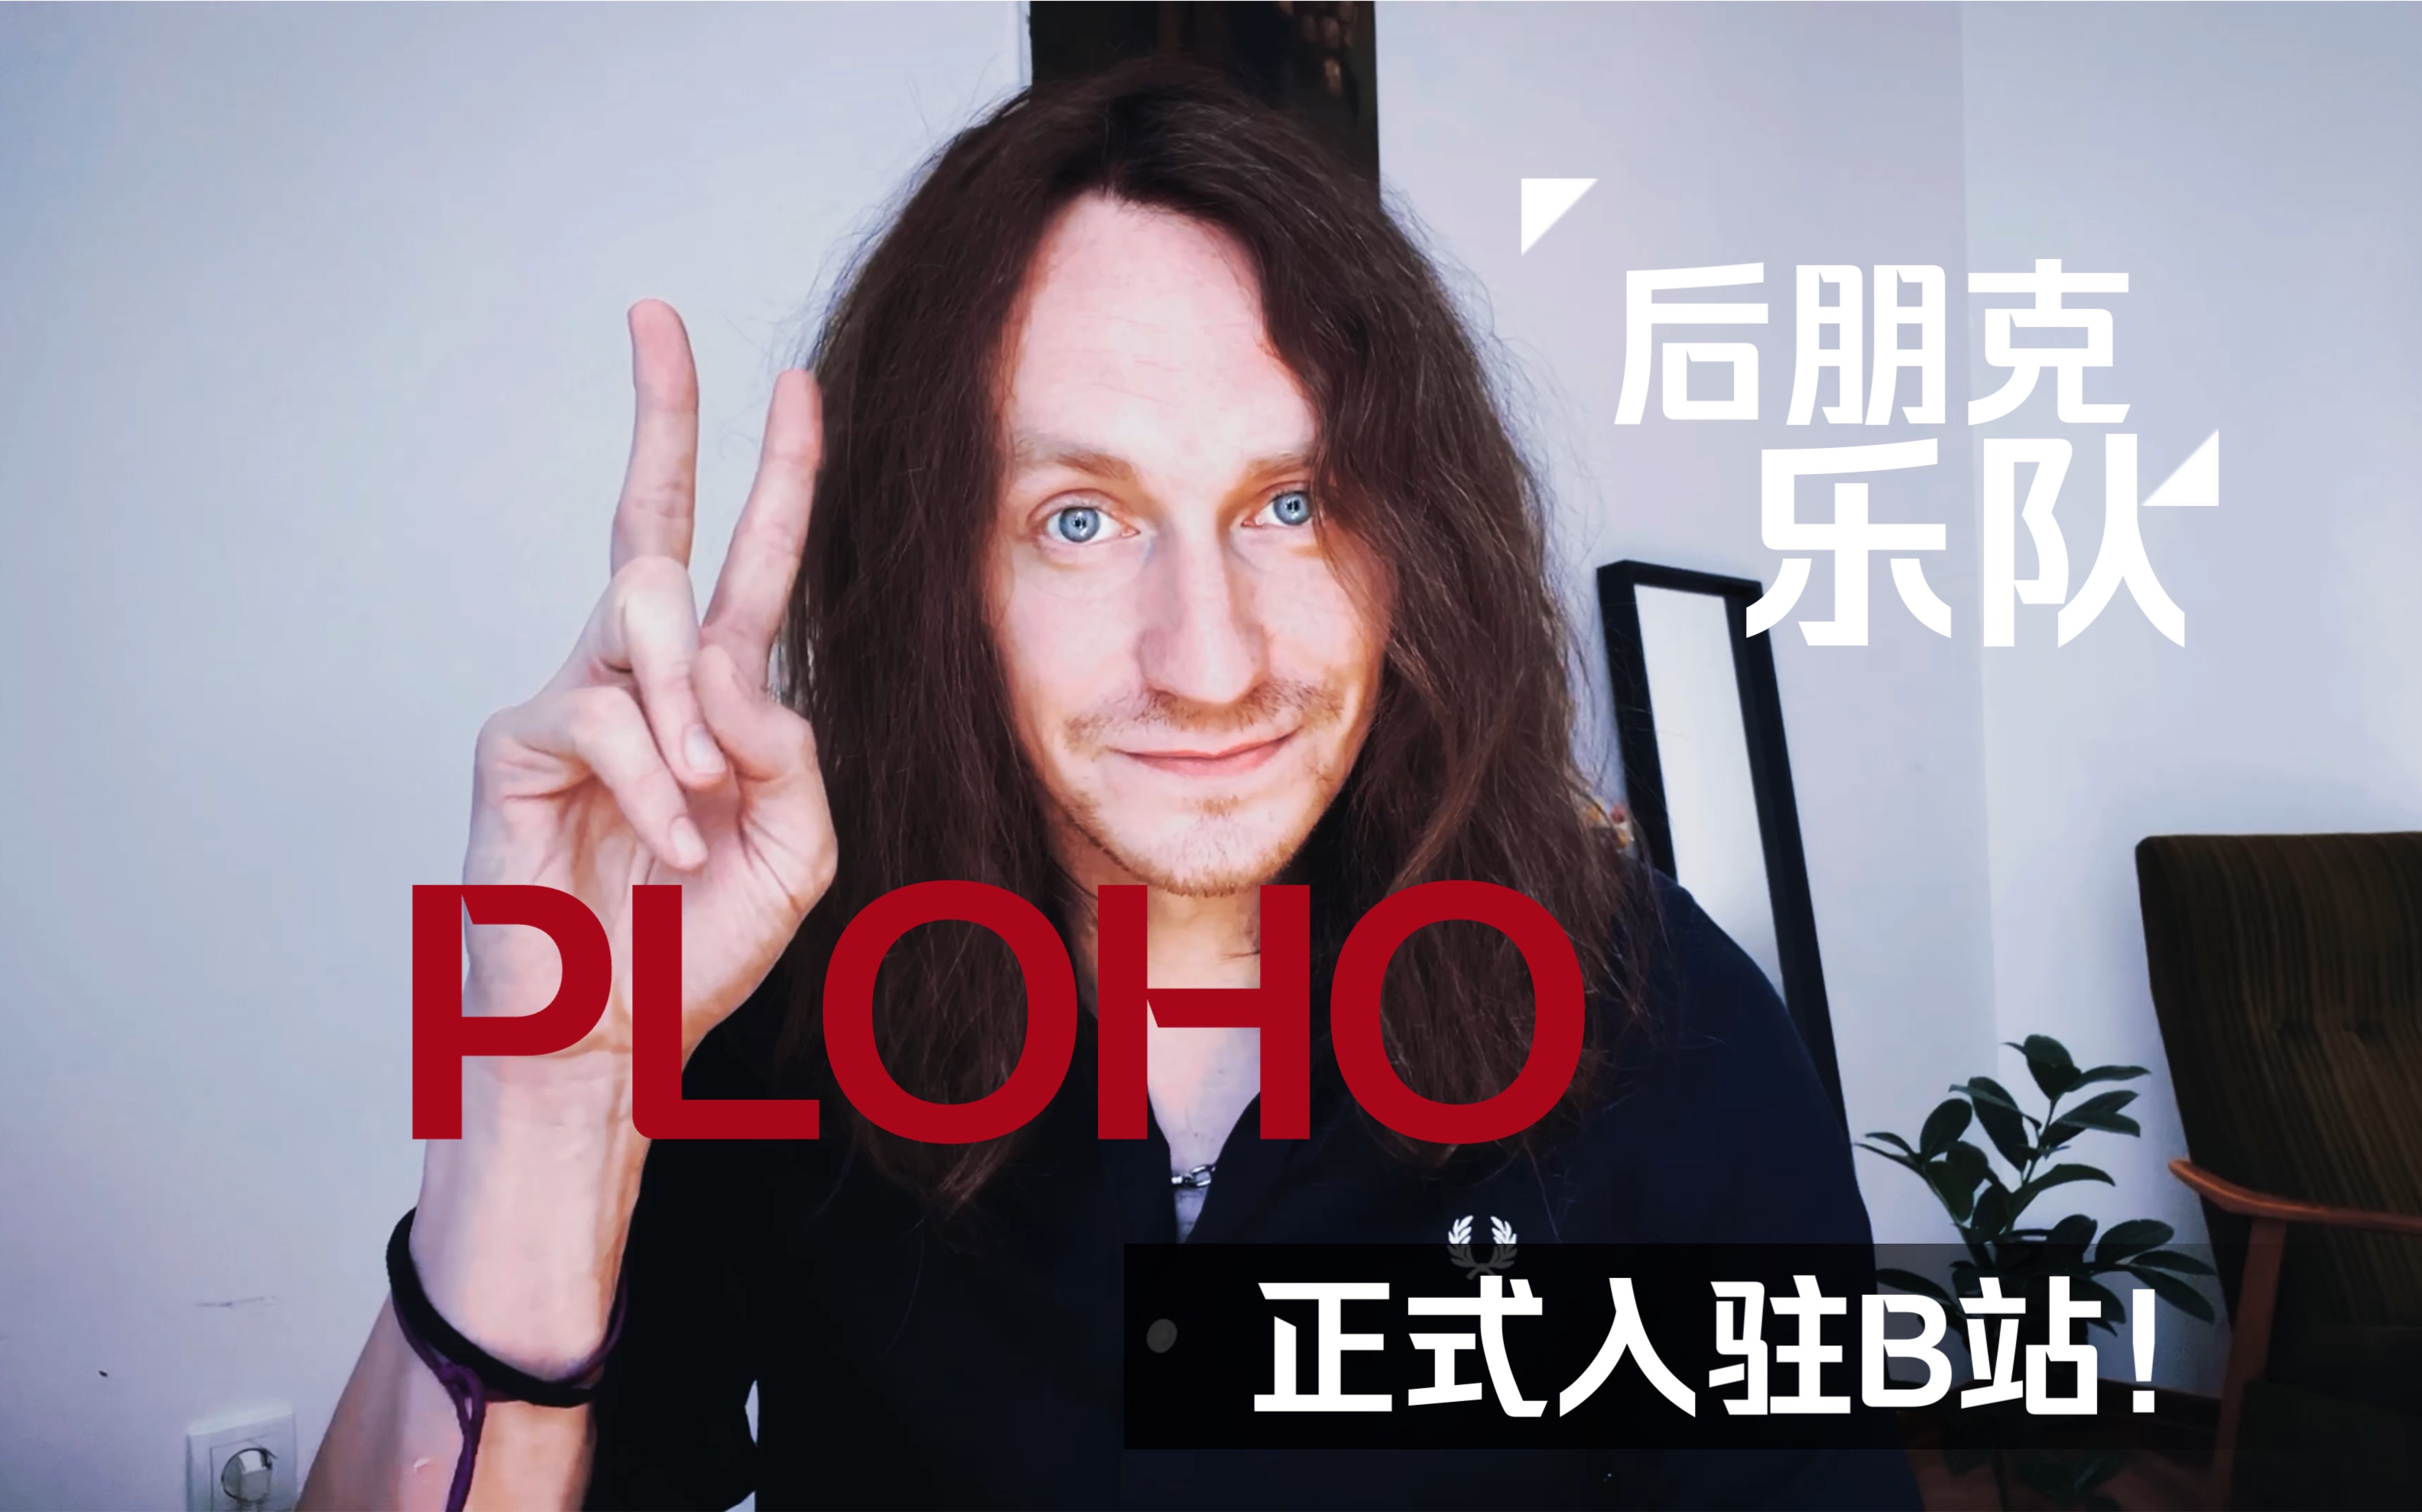 大家好！我们是Ploho乐队官方，今天正式入驻Bilibili啦！